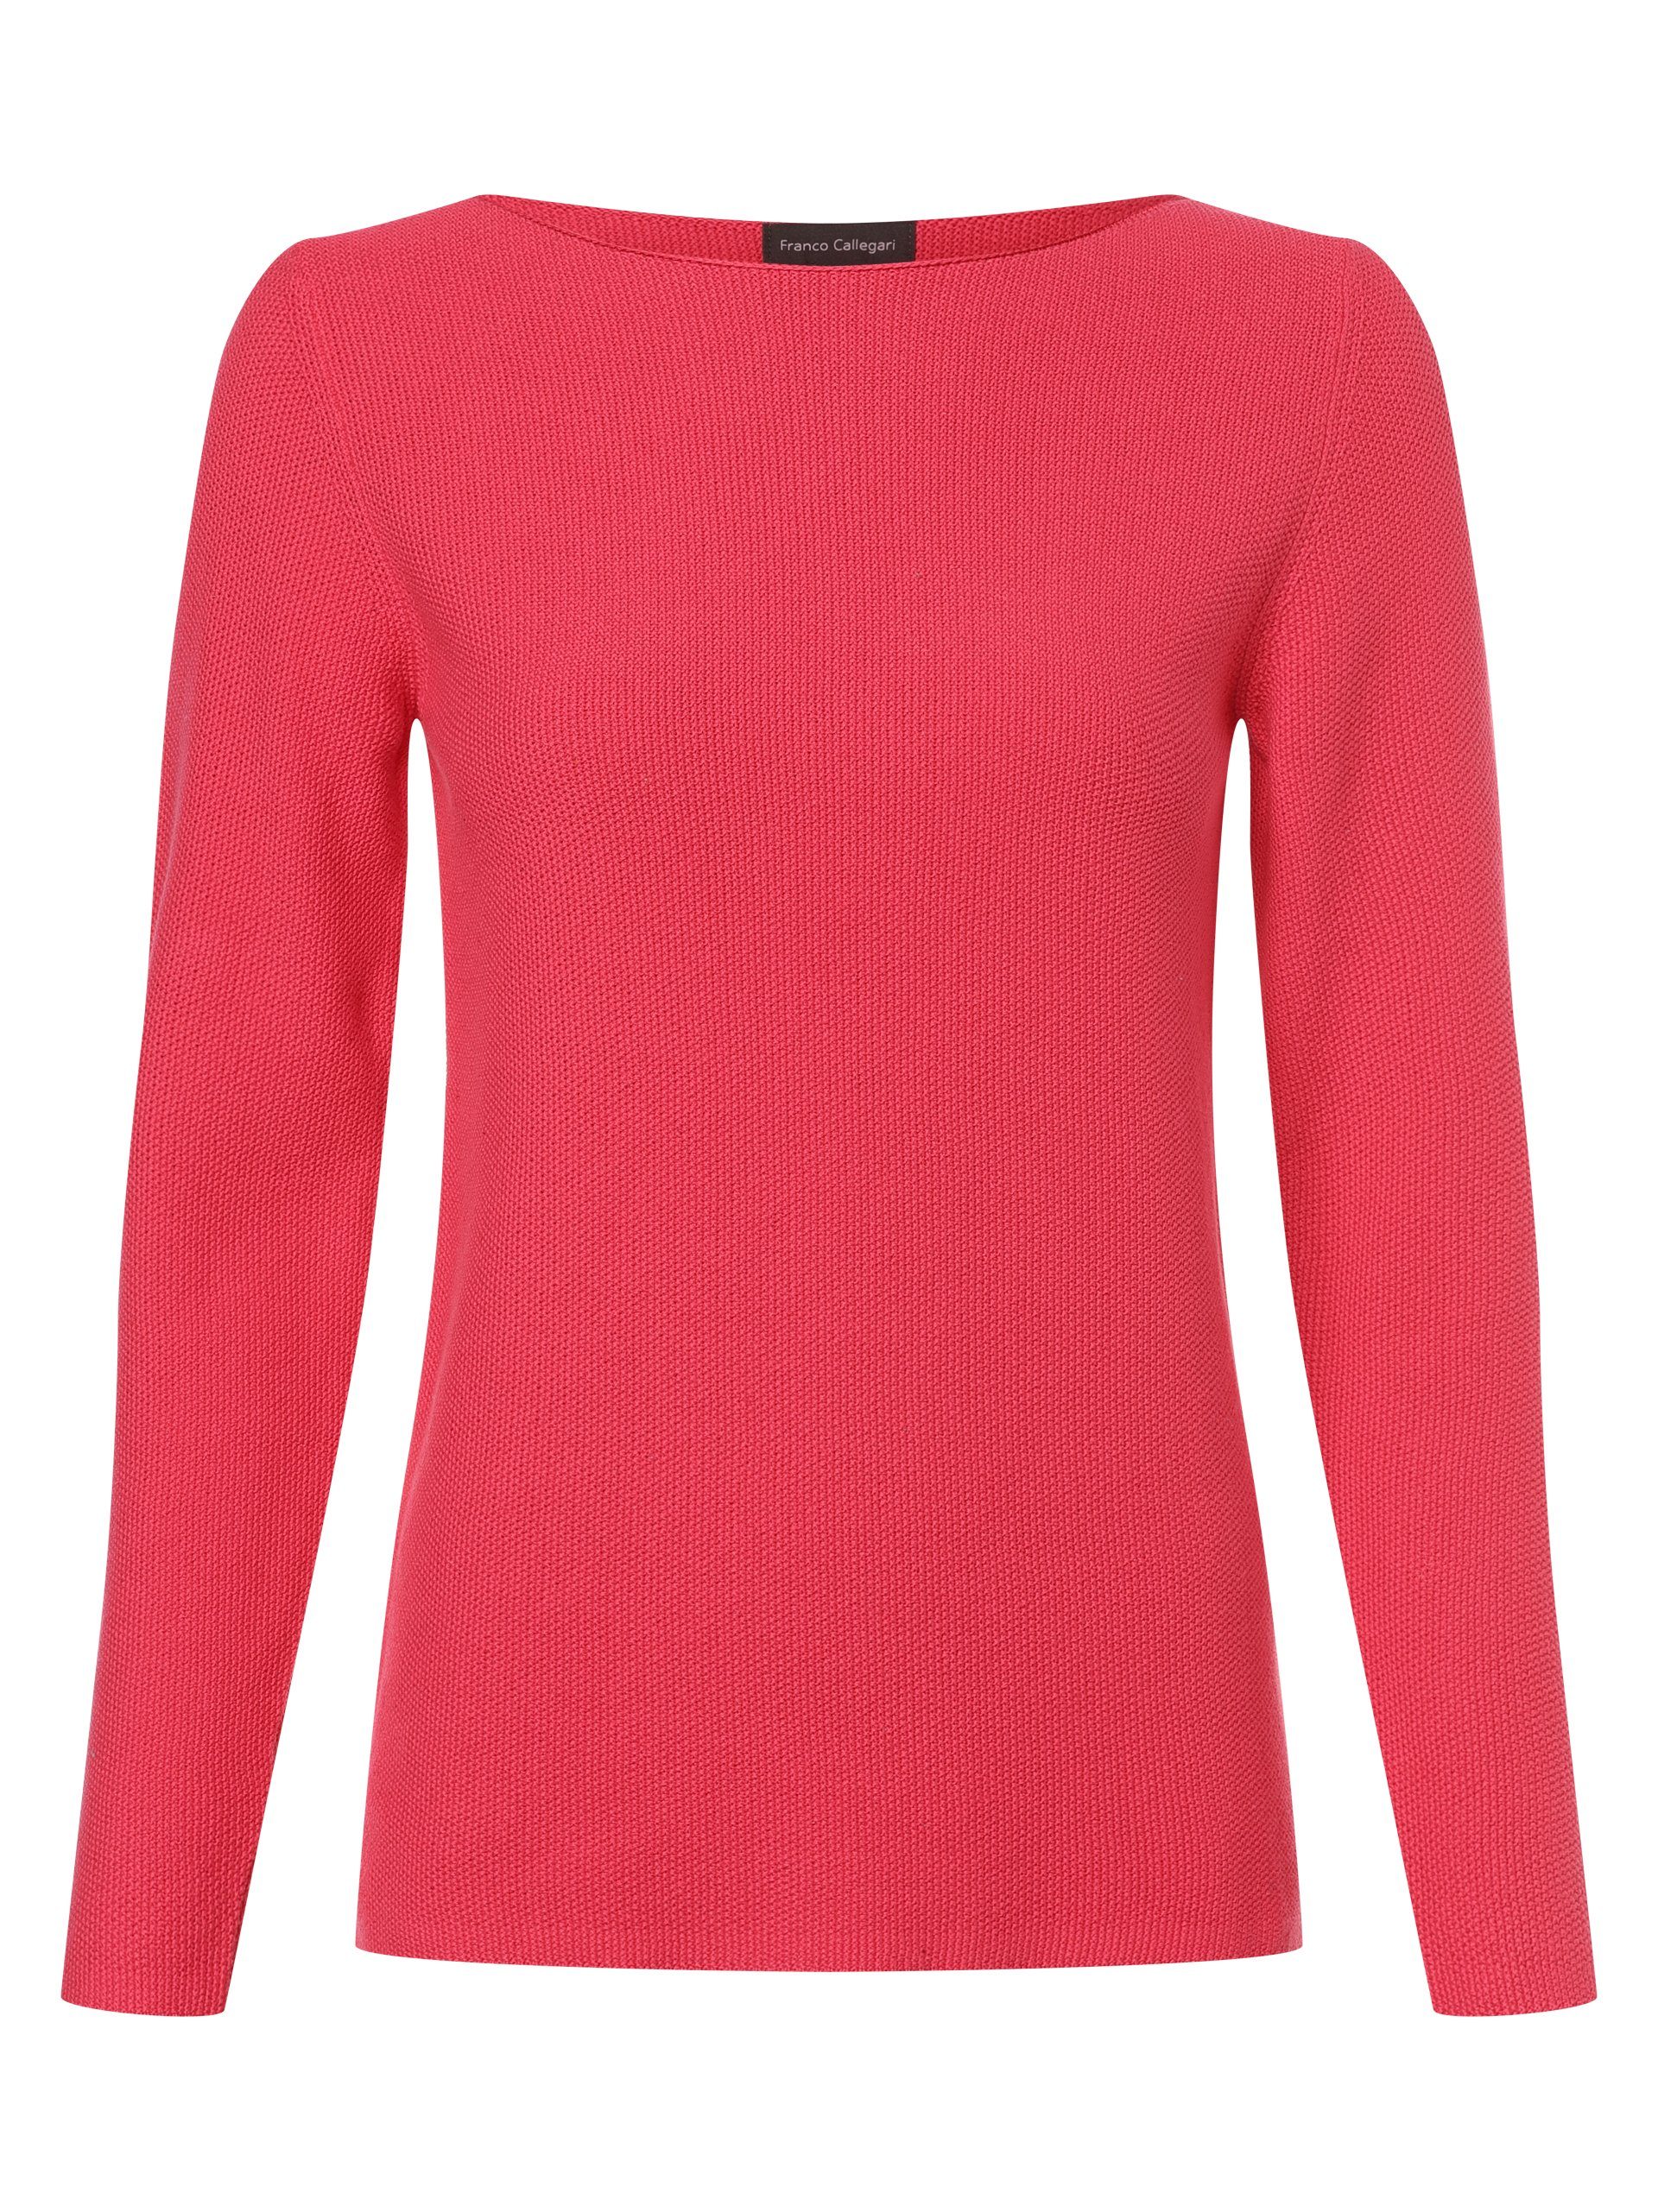 Franco Callegari Pullover für Damen online kaufen | OTTO